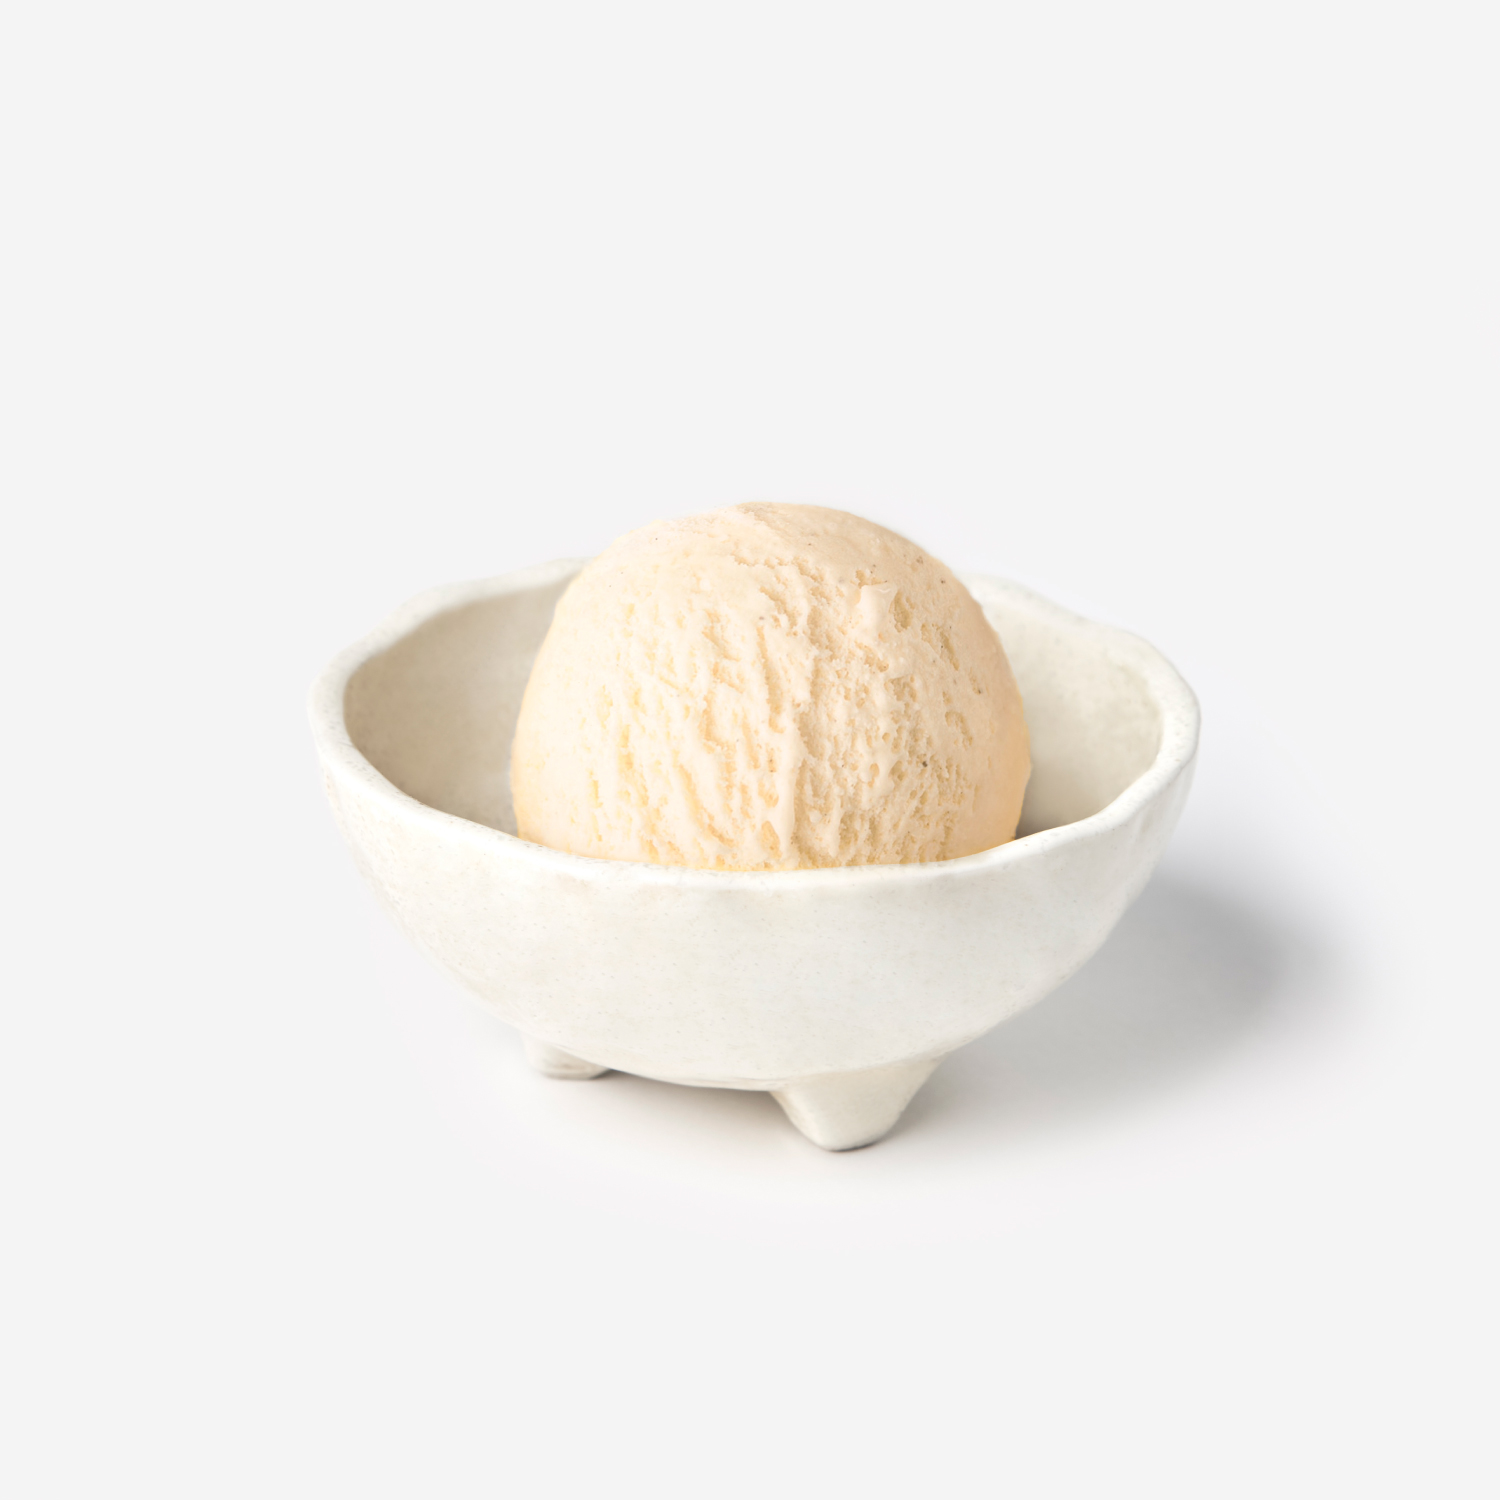 ไอศกรีม : SYNOVA ชีสเค้กไอศกรีม 4 L. (แพน)